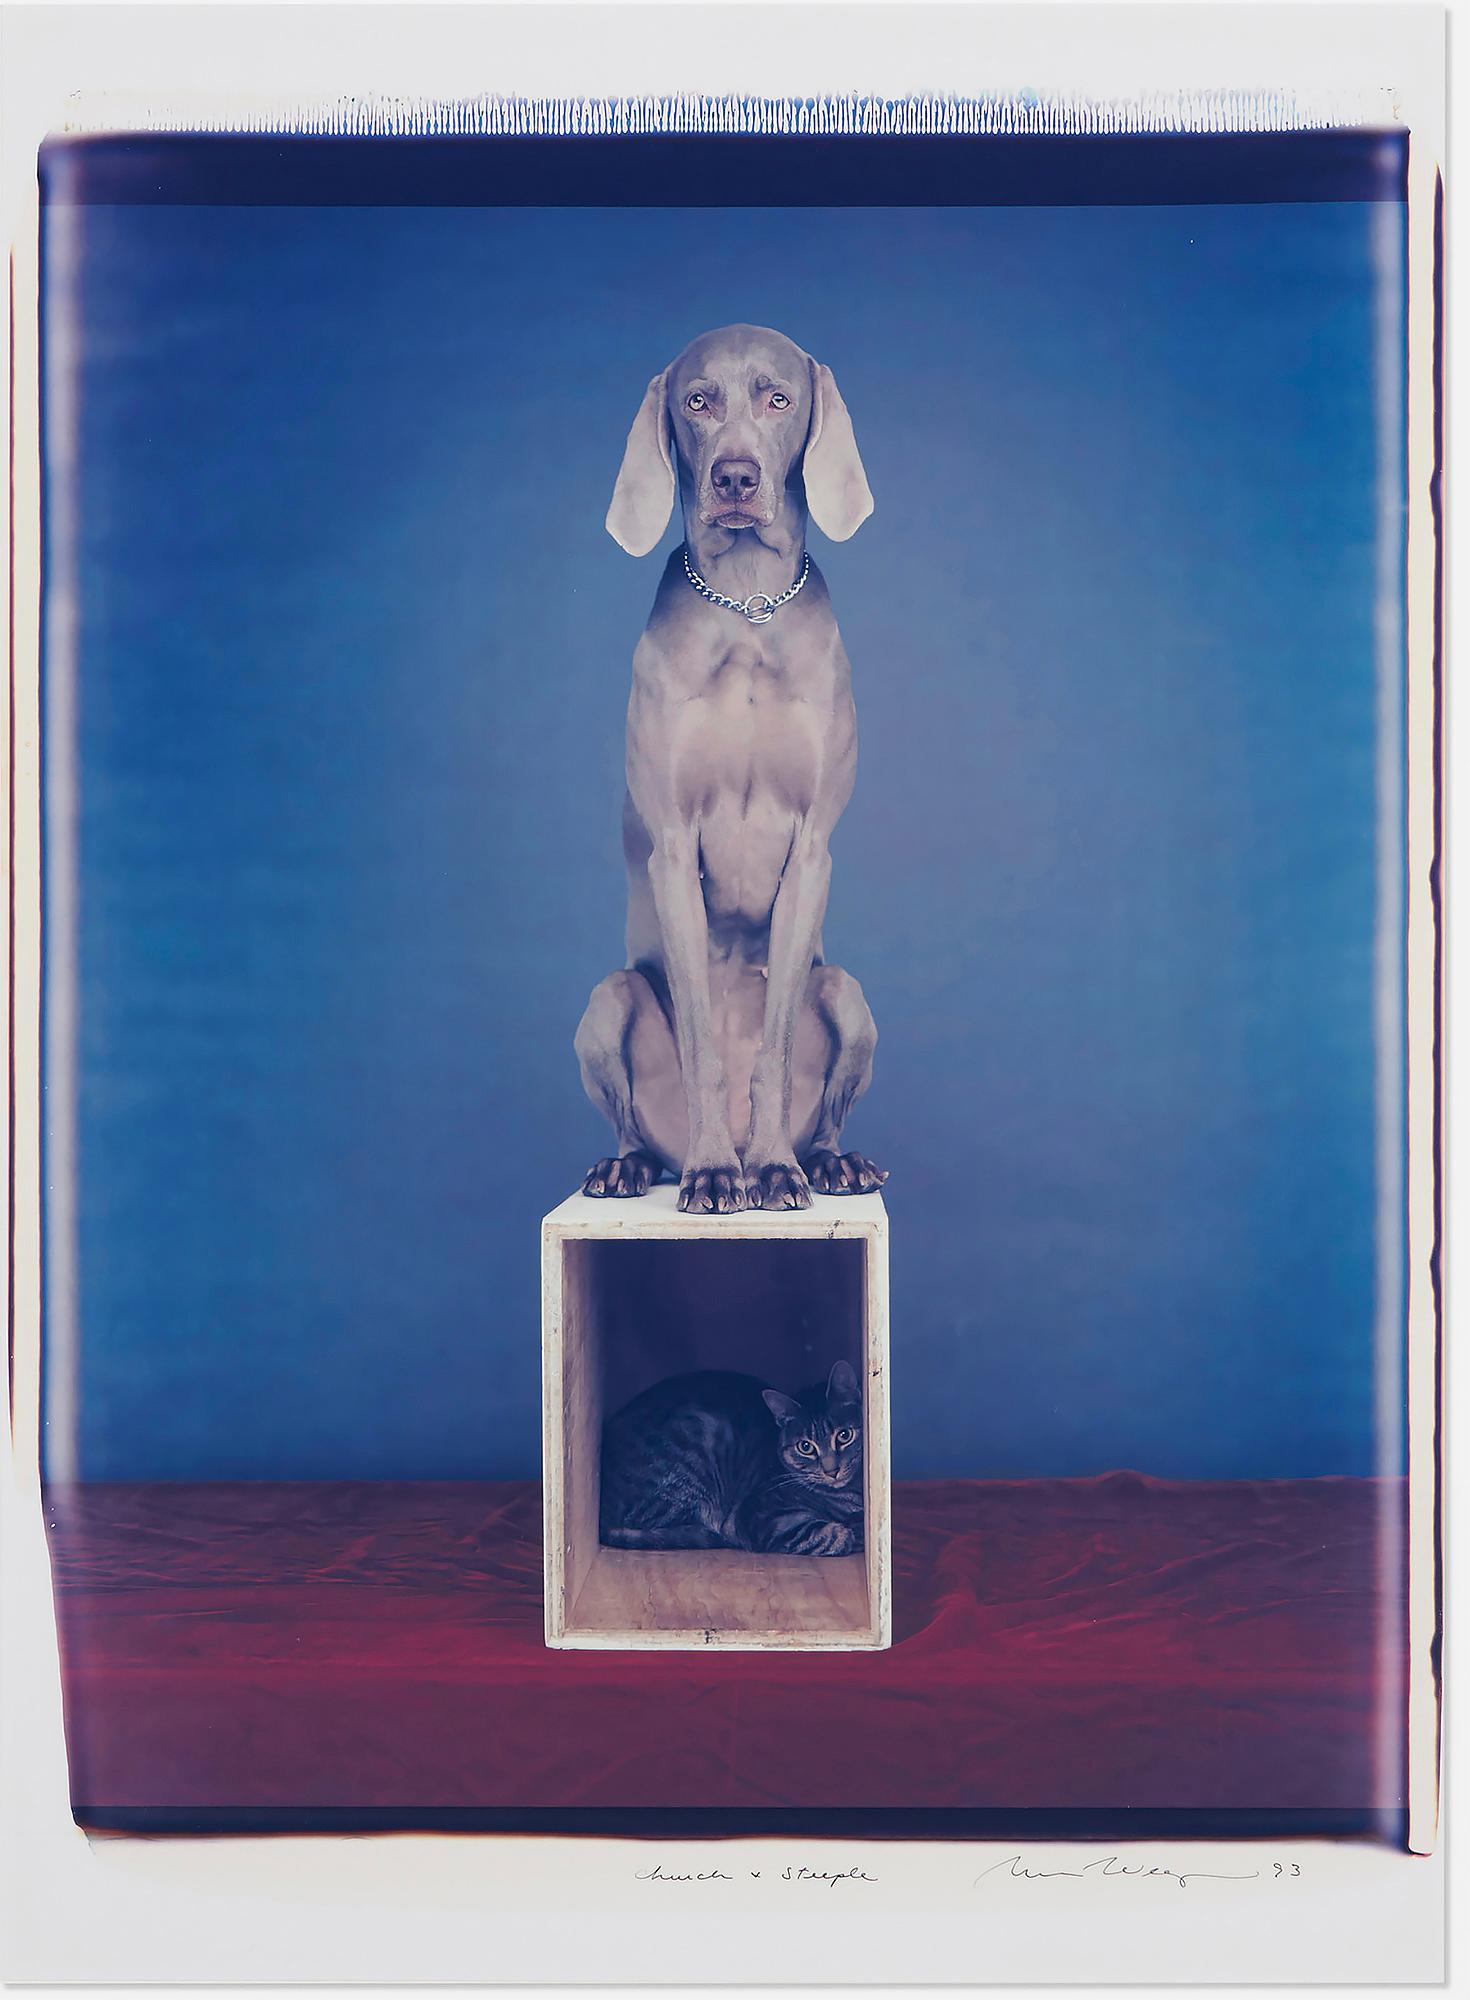 William Wegman Portrait Photograph – Kirchen- und Steeple – Hund und Katze Großformatiges Polaroid